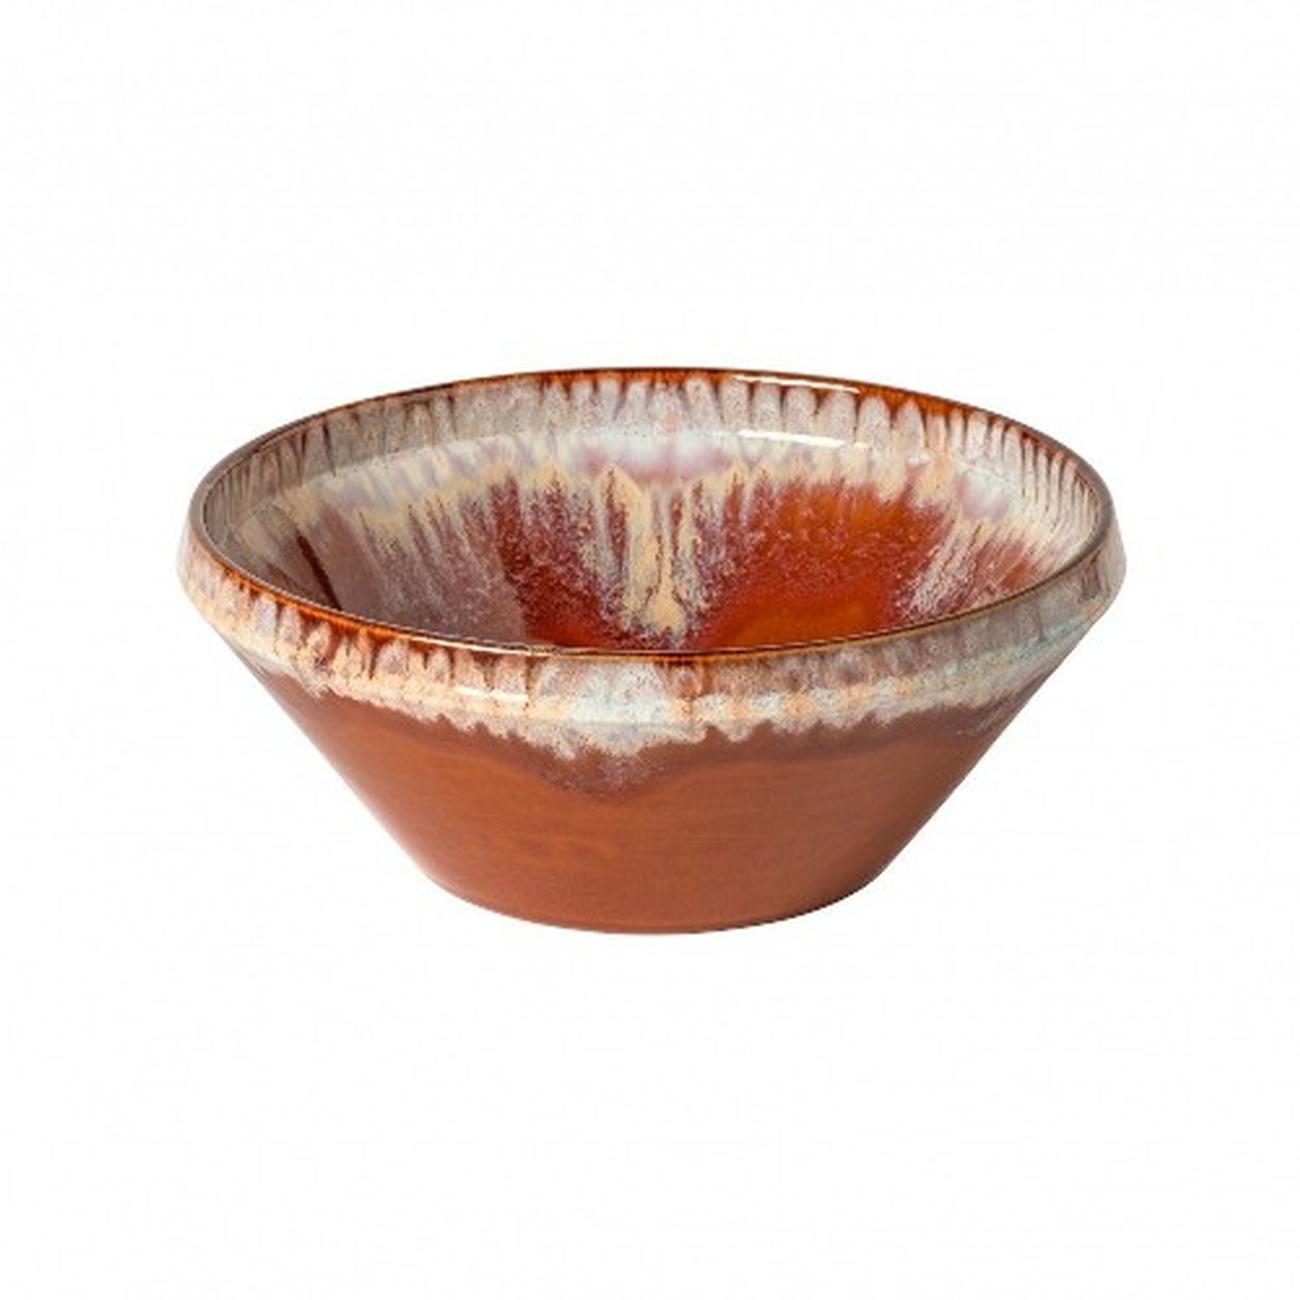 casafina-poterie-serving-bowl-caramel-latte-25cm - Poterie Serving Bowl 25cm